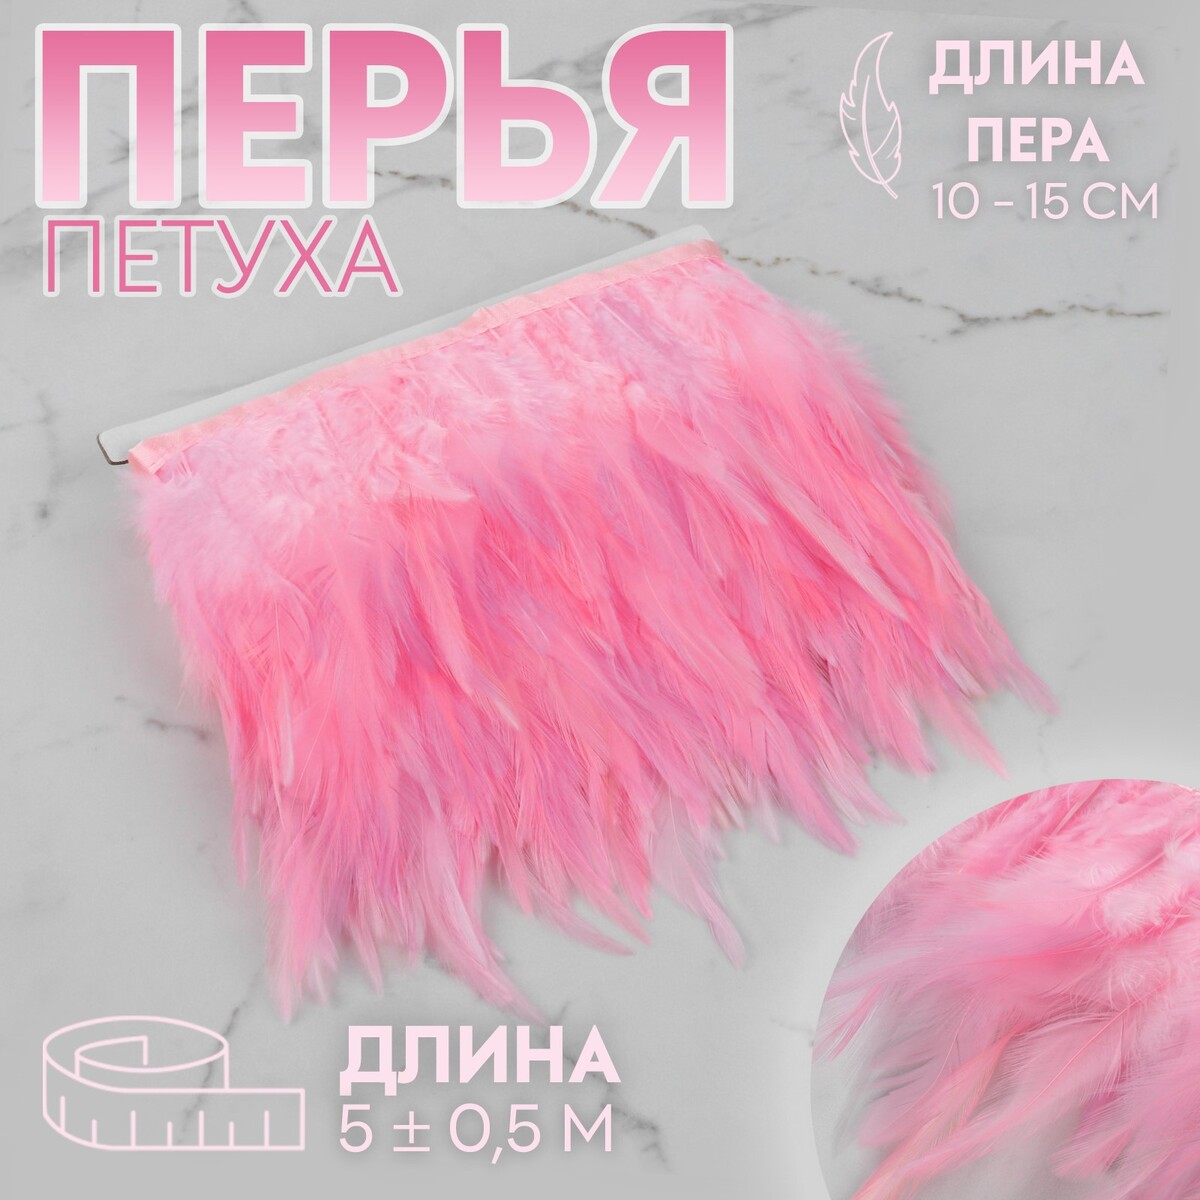 Тесьма с перьями петуха, 10-15 см, 5 ± 0,5 м, цвет розовый тесьма с перьями страуса 8 10 см 5 ± 0 5 м слоновая кость